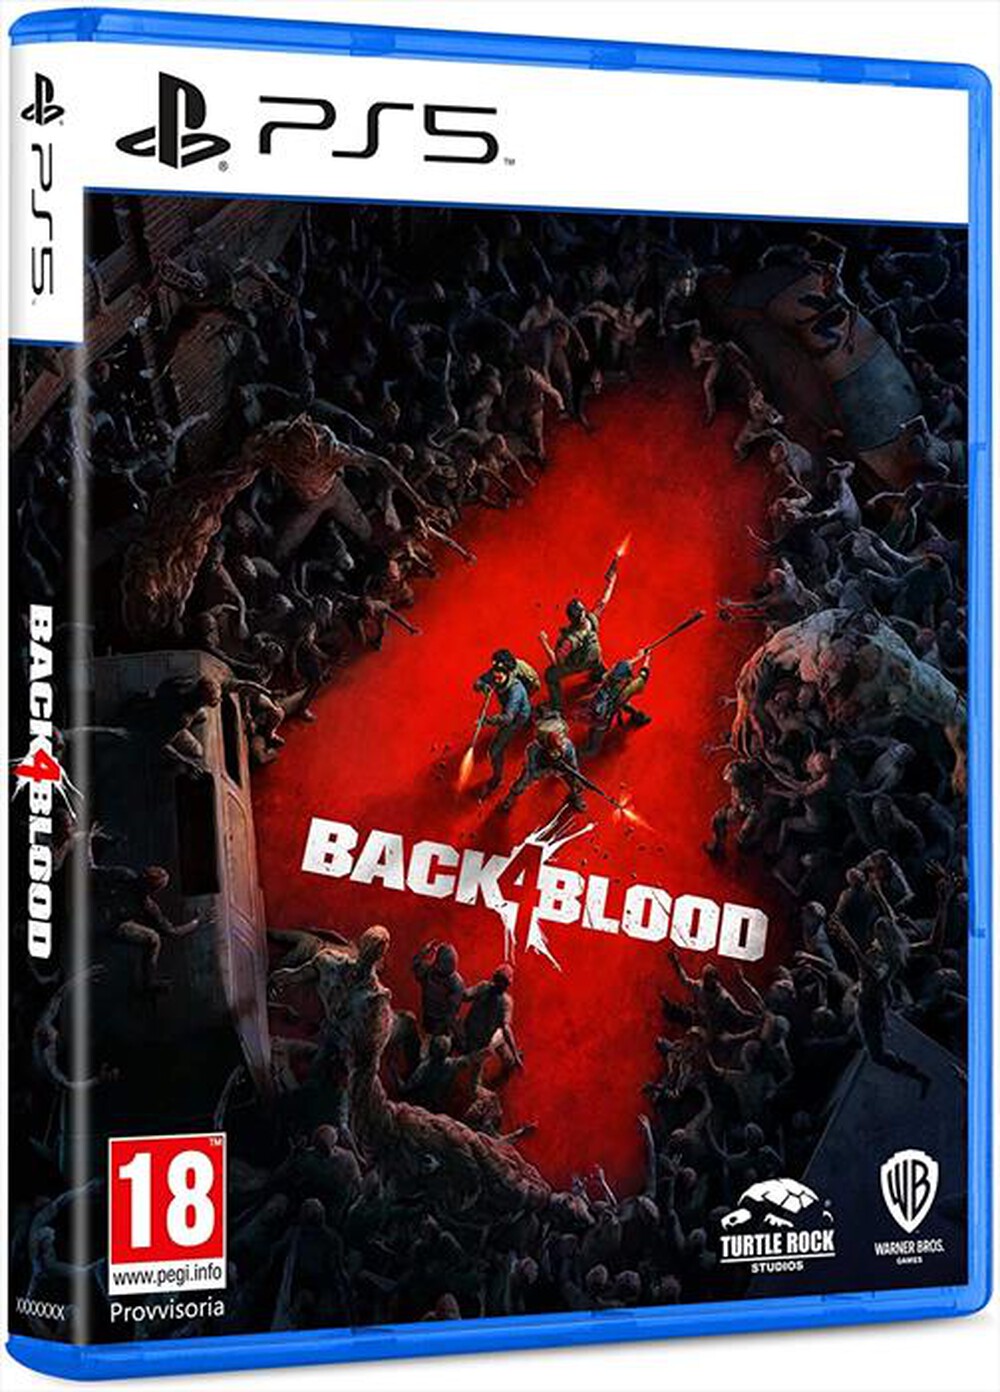 "WARNER GAMES - BACK 4 BLOOD (PS5)"